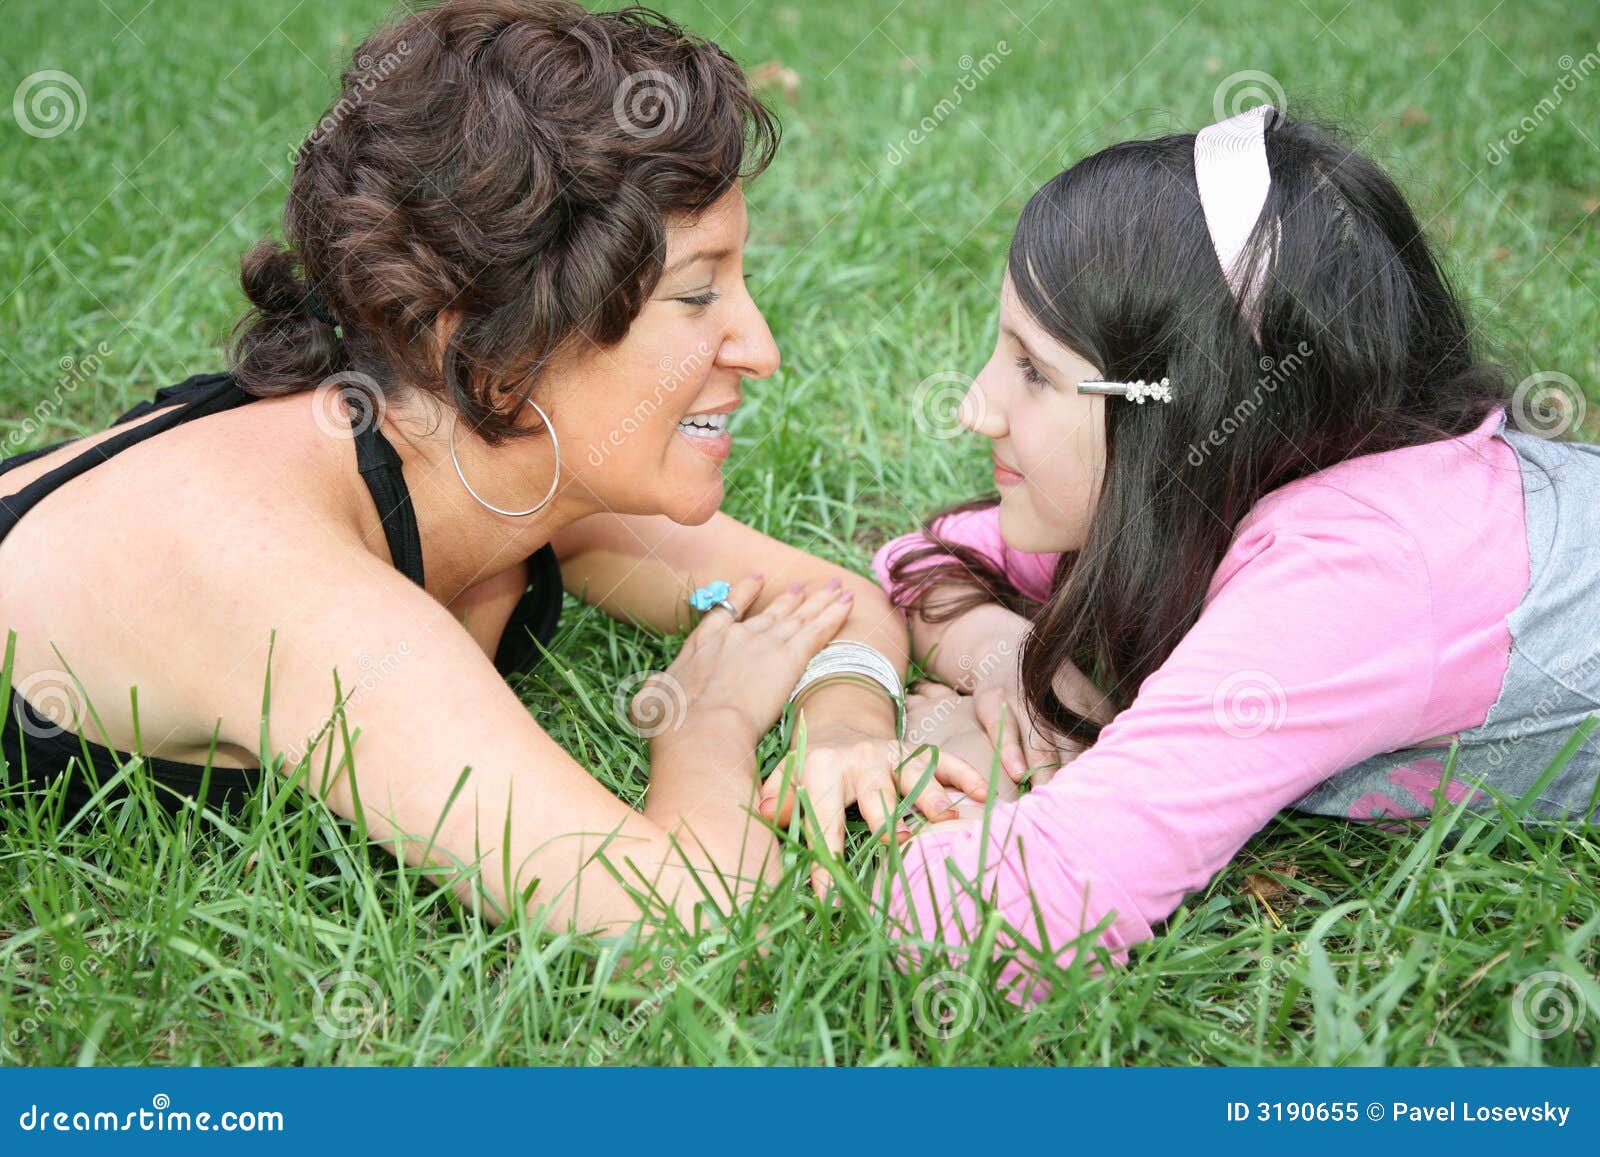 Мамы лесбиянки с русским переводом. Мать и дочь на траве. Дочка лежит на маме. Мама и дочка лесбиянство. Фотосессия мама и дочь лизбиянка.